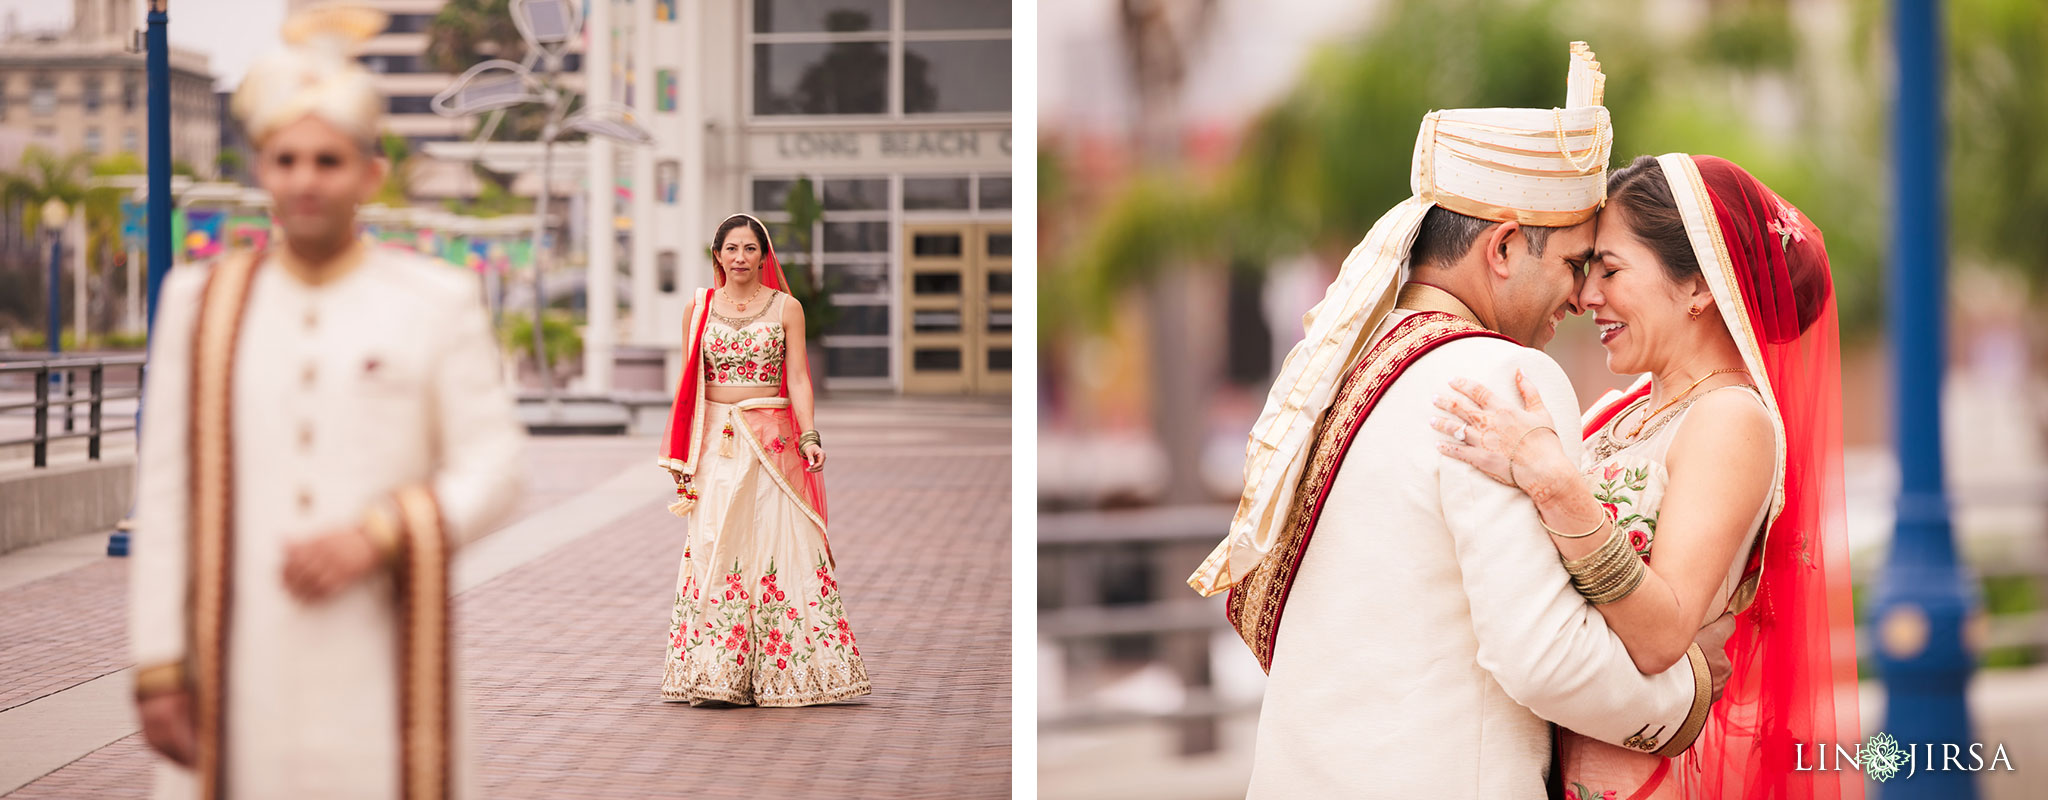 07 Hyatt Long Beach Indian Wedding Photography